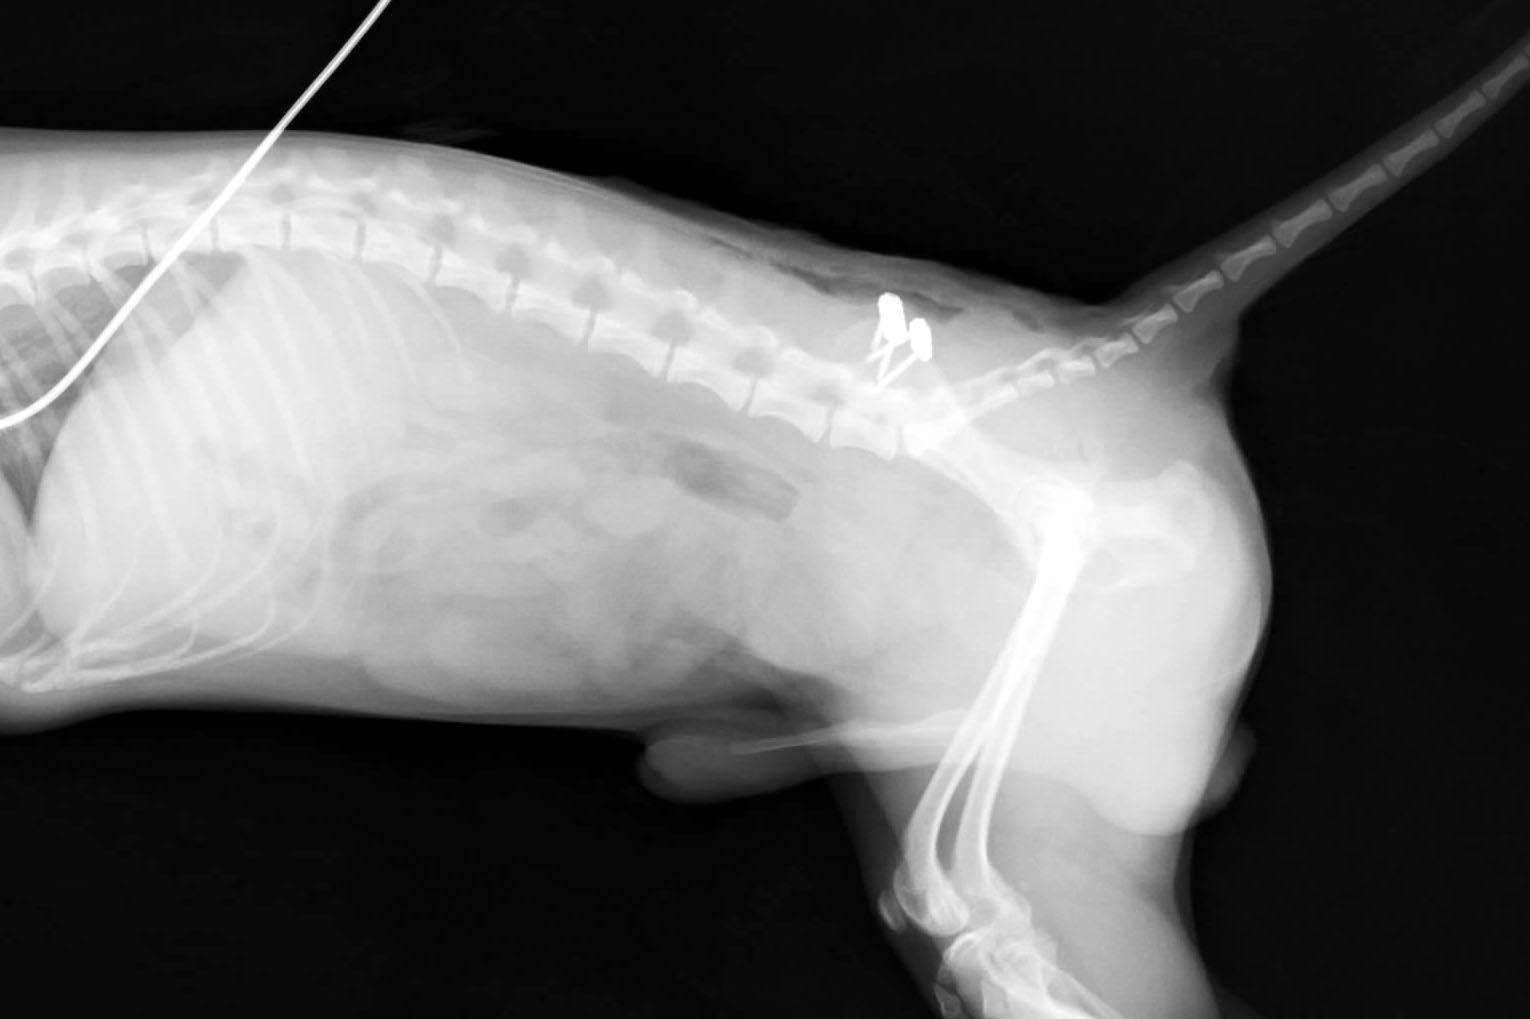 イヌの骨盤骨折の整復手術 整形外科 やまと動物病院やまと動物病院